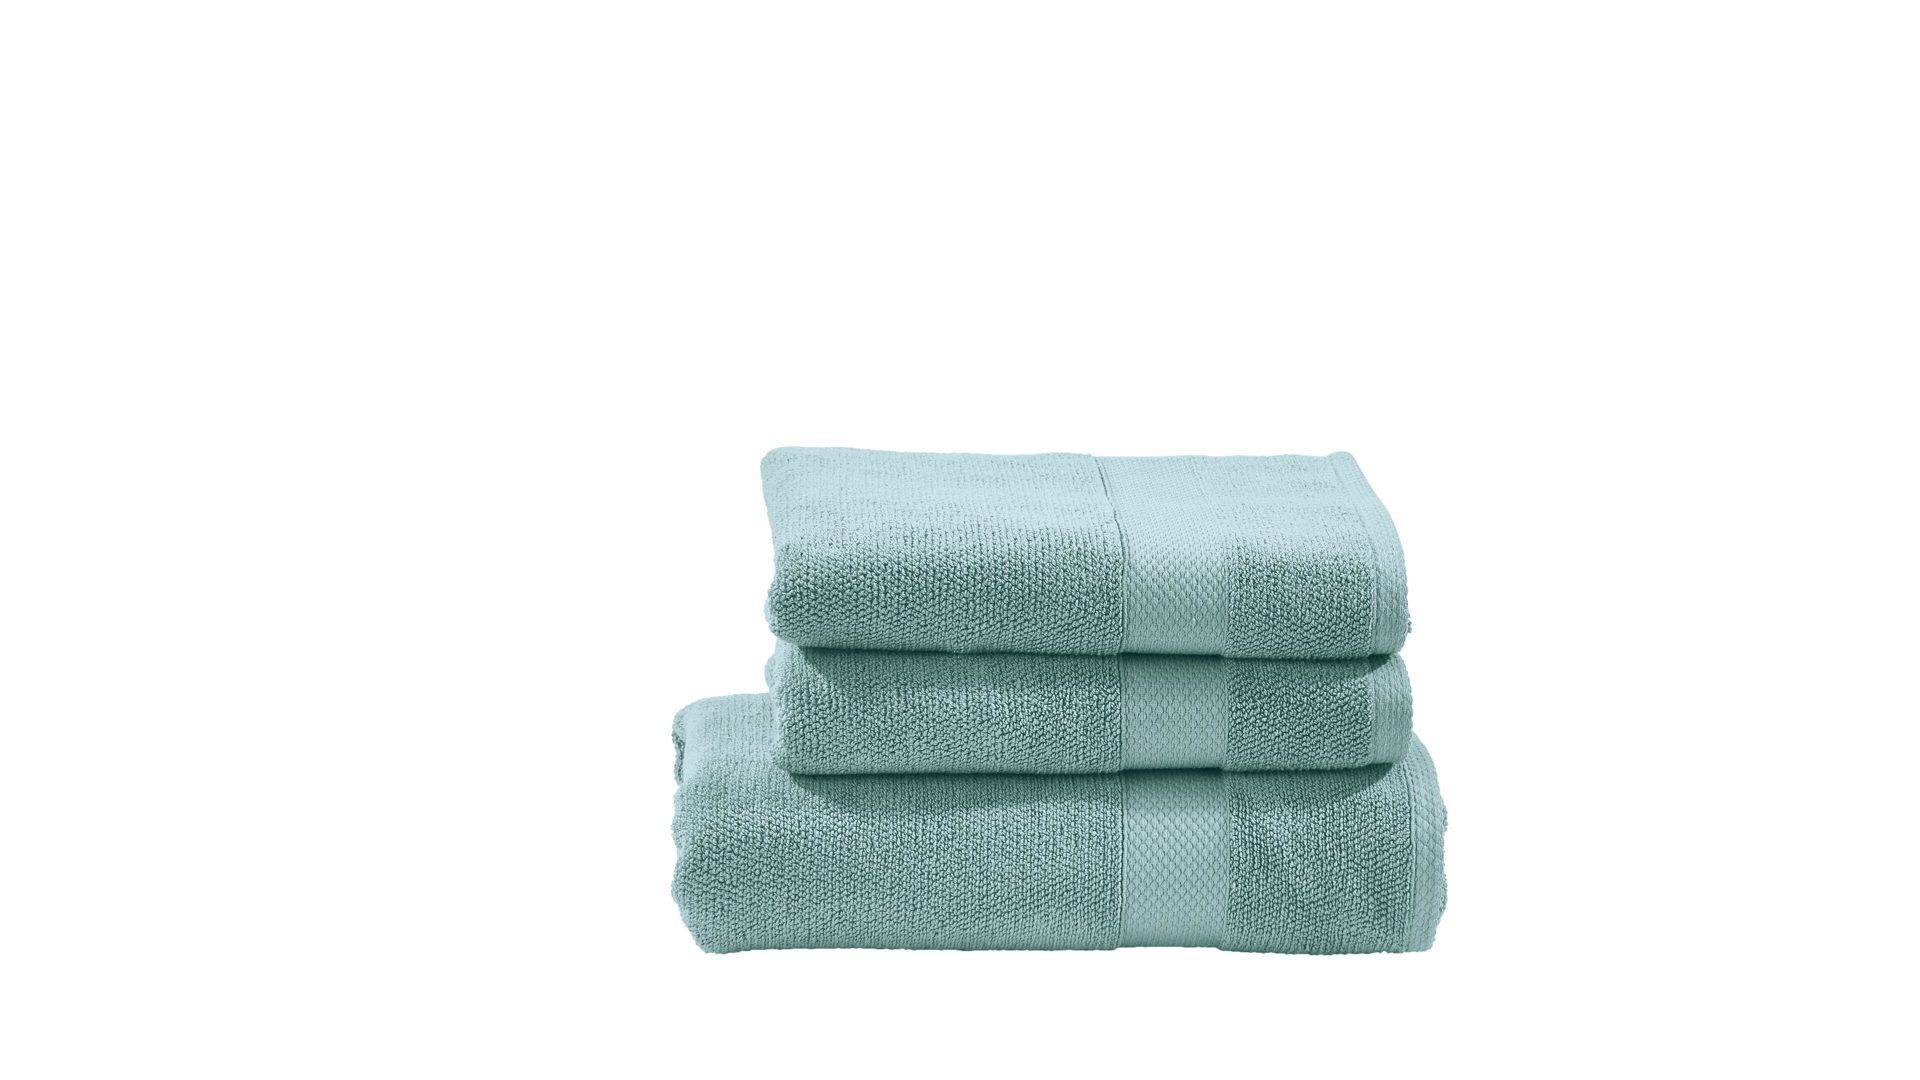 Handtuch-Set Done® by karabel home company aus Stoff in Pastellfarben DONE® Handtuch-Set Deluxe für Ihre Heimtextililen oceanfarbene Baumwolle  – dreiteilig